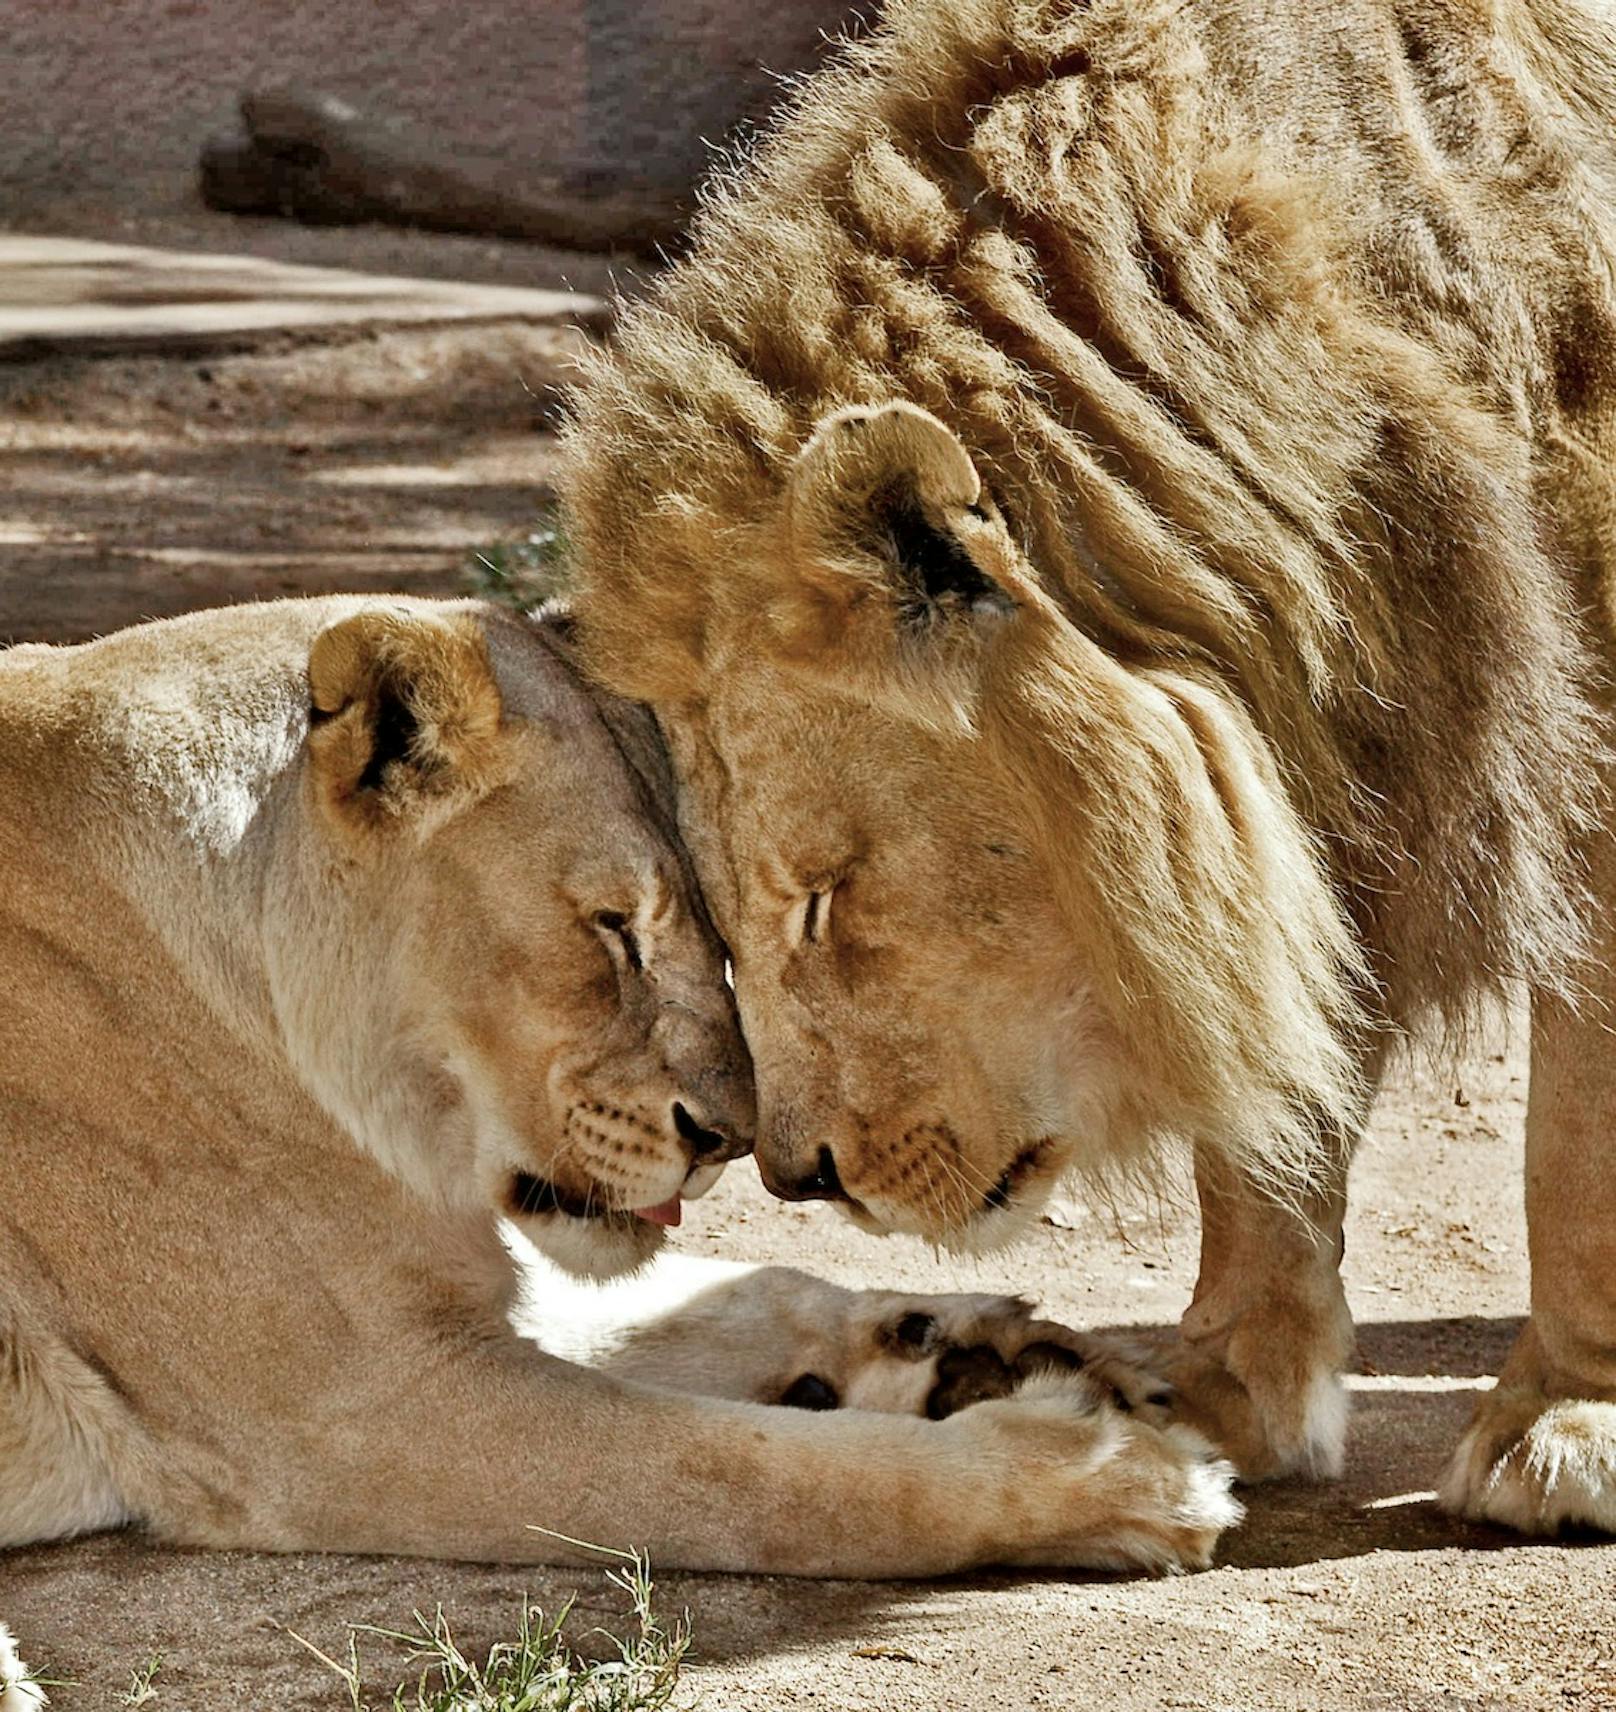 Hubert und Kalisa waren seit 2014 die Stars des Los Angeles Zoos